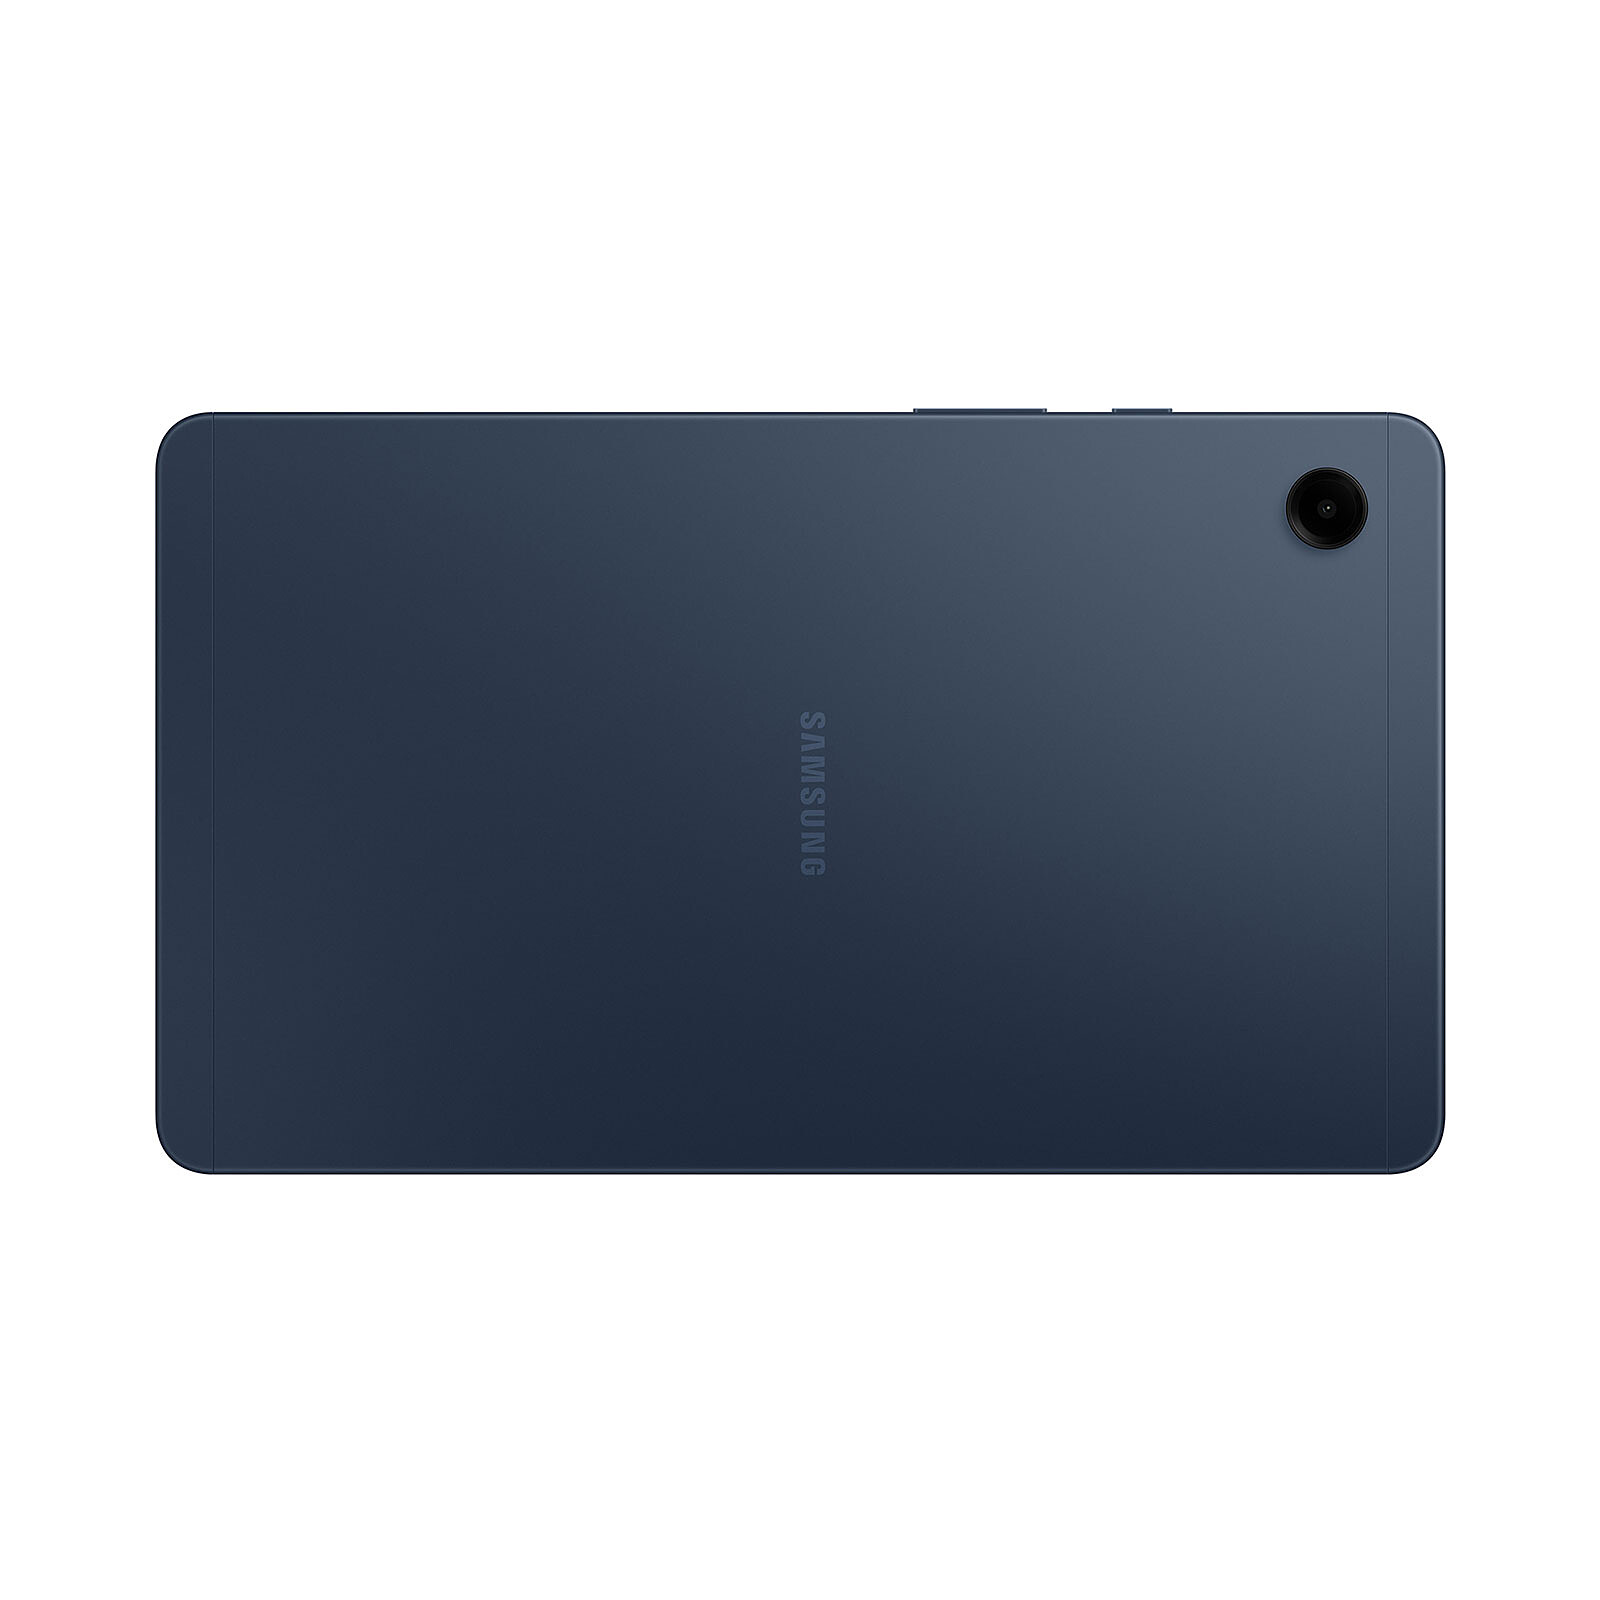 Samsung Galaxy Tab A9 8.7 SM-X110 64 Go Bleu Wi-Fi - Tablette